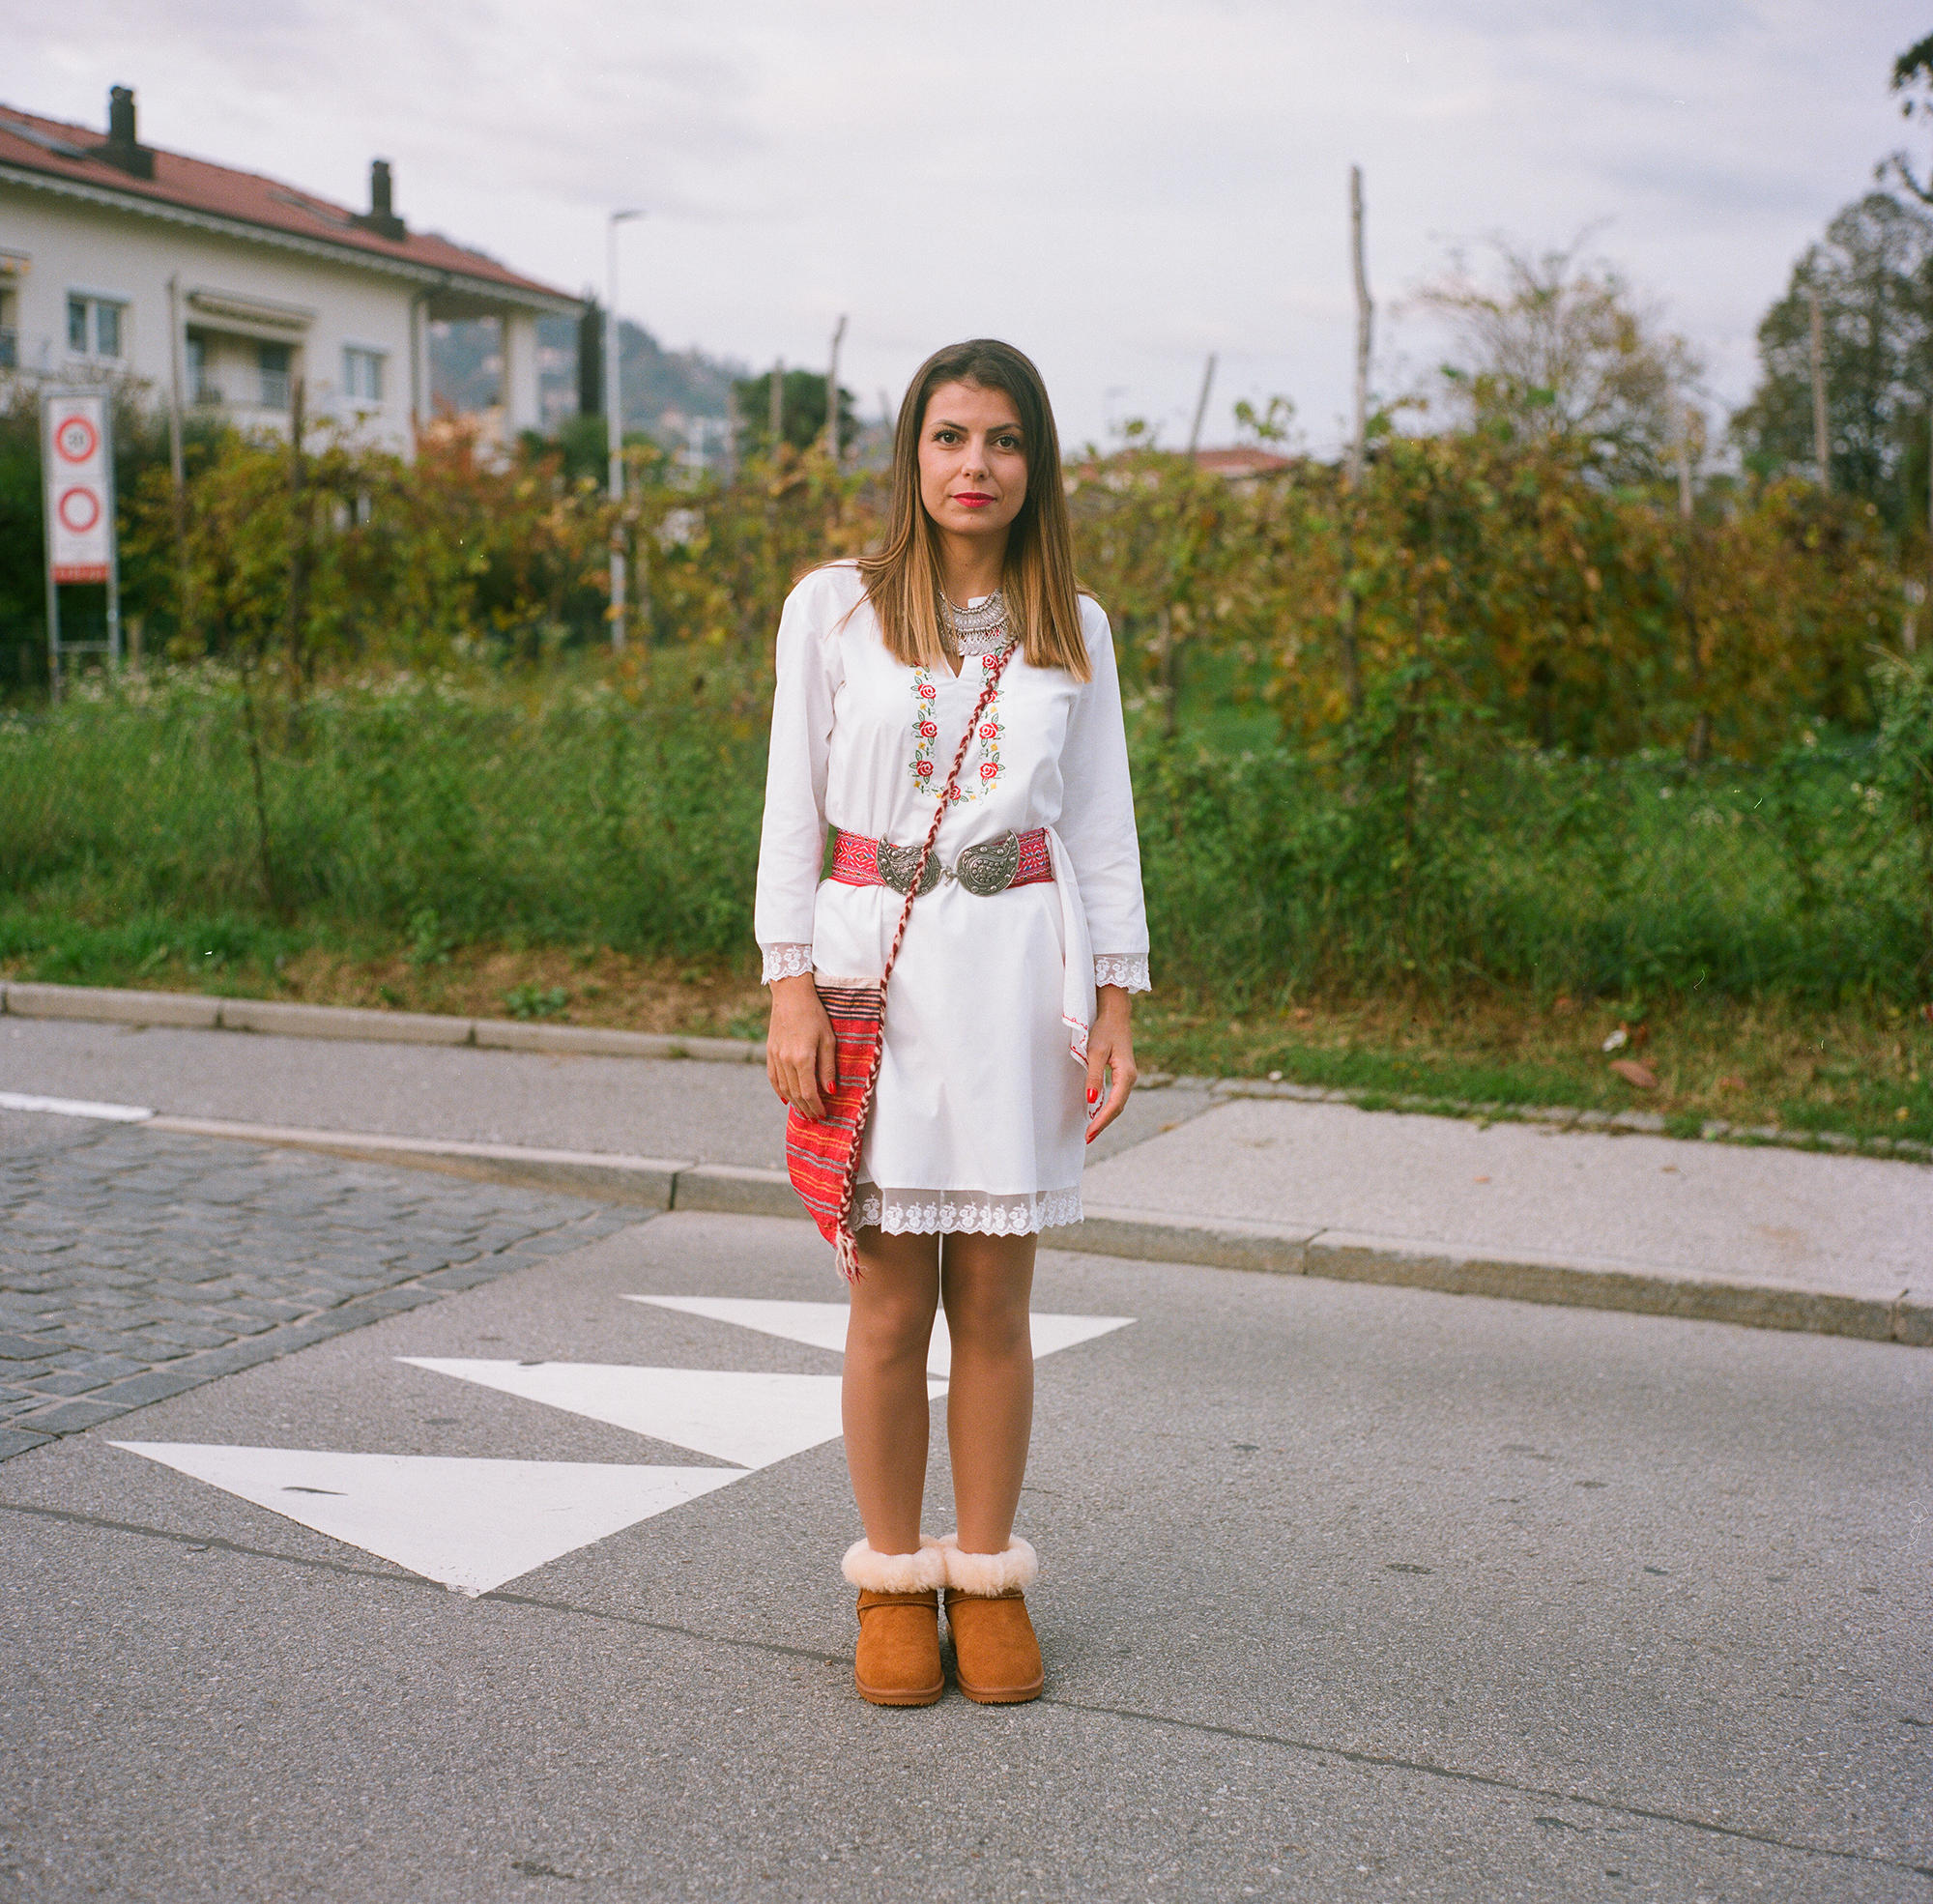 فتاة بلغارية بلباسها التقليدي